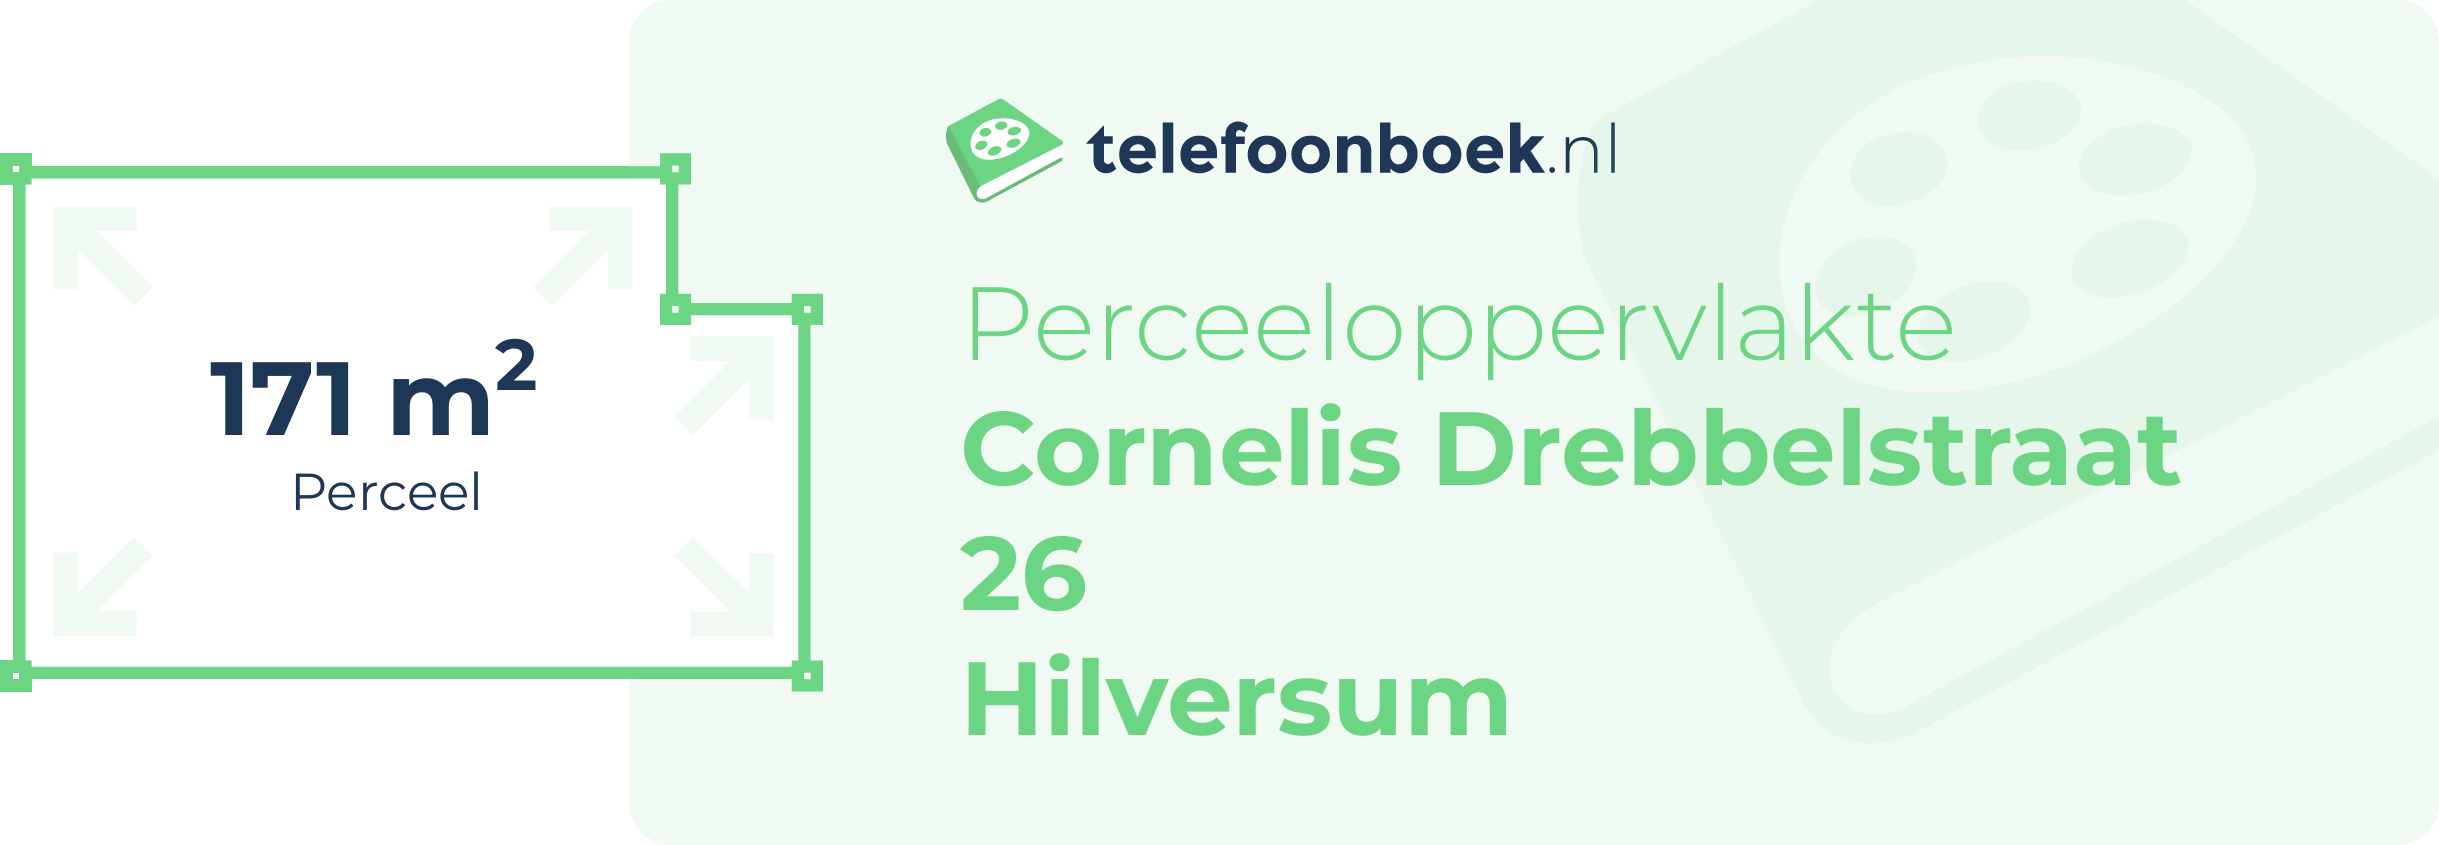 Perceeloppervlakte Cornelis Drebbelstraat 26 Hilversum